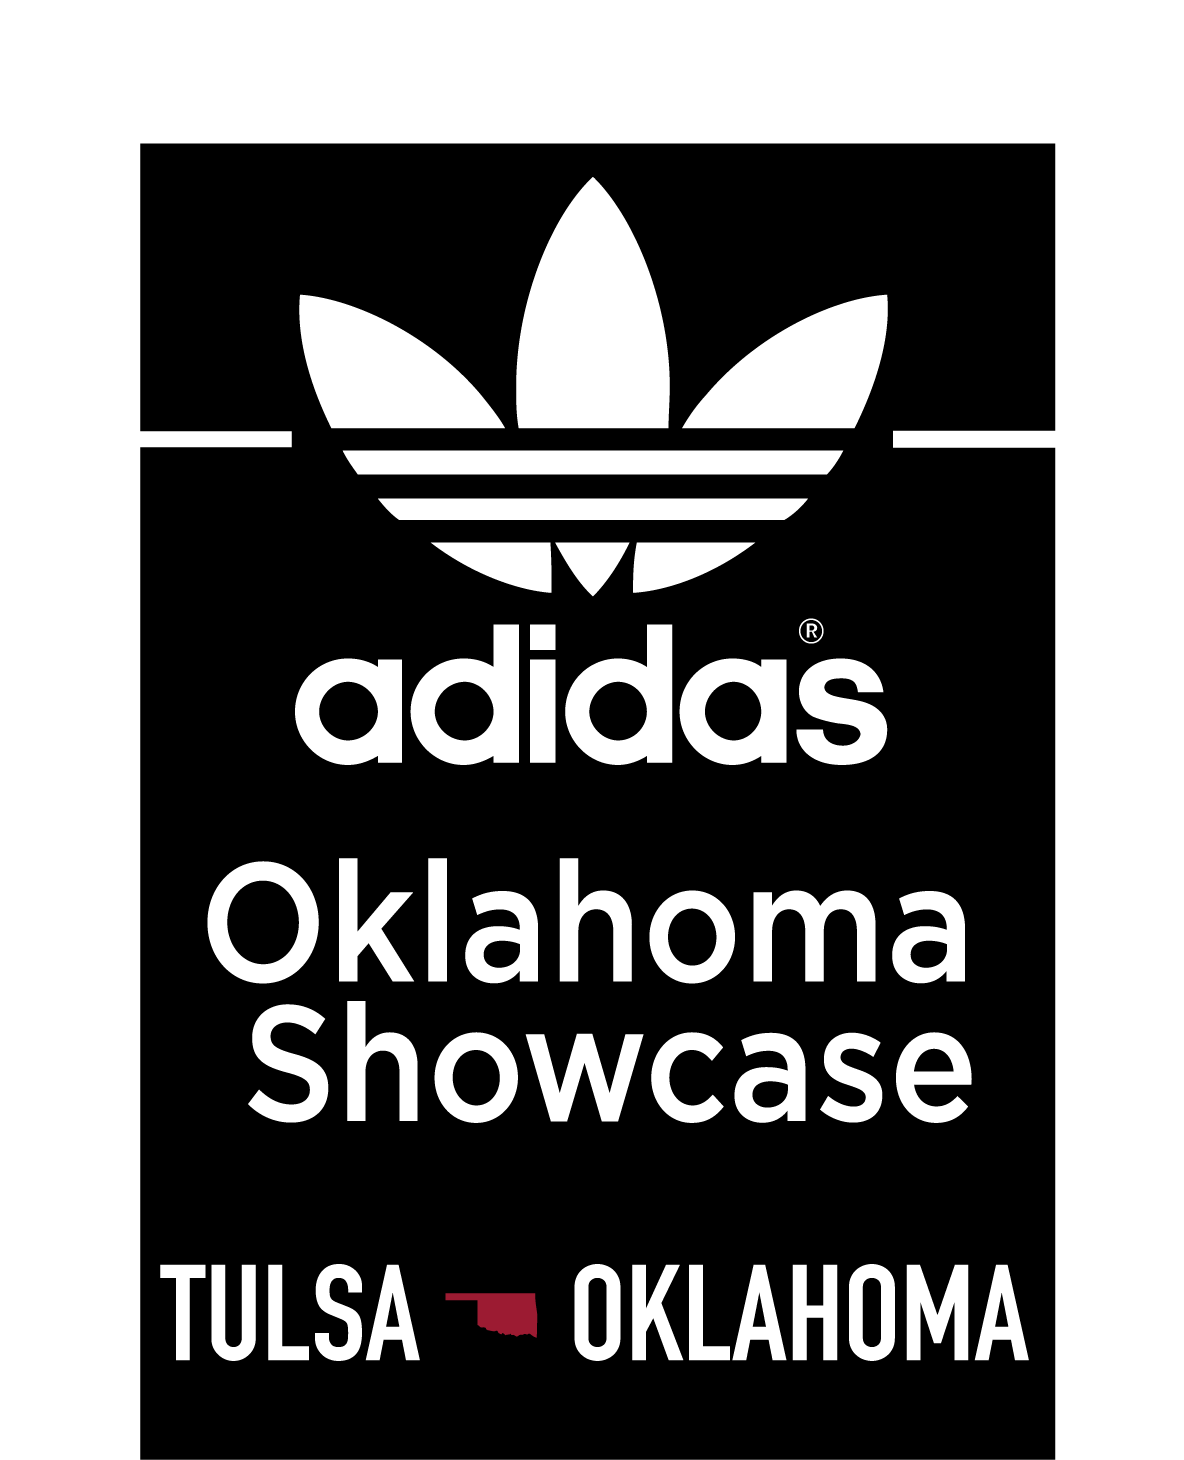 Adidas Oklahoma Showcase